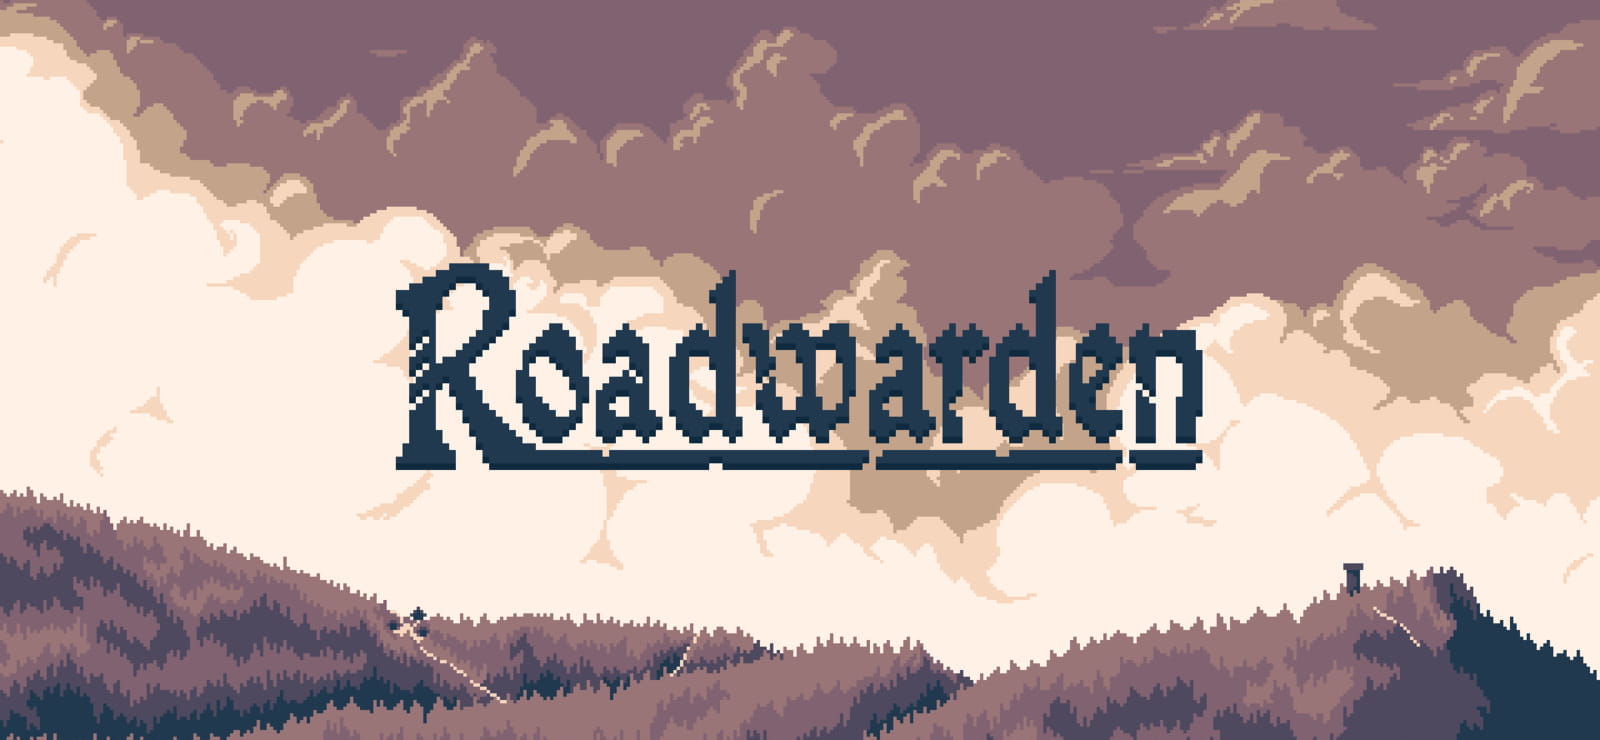 Roadwarden